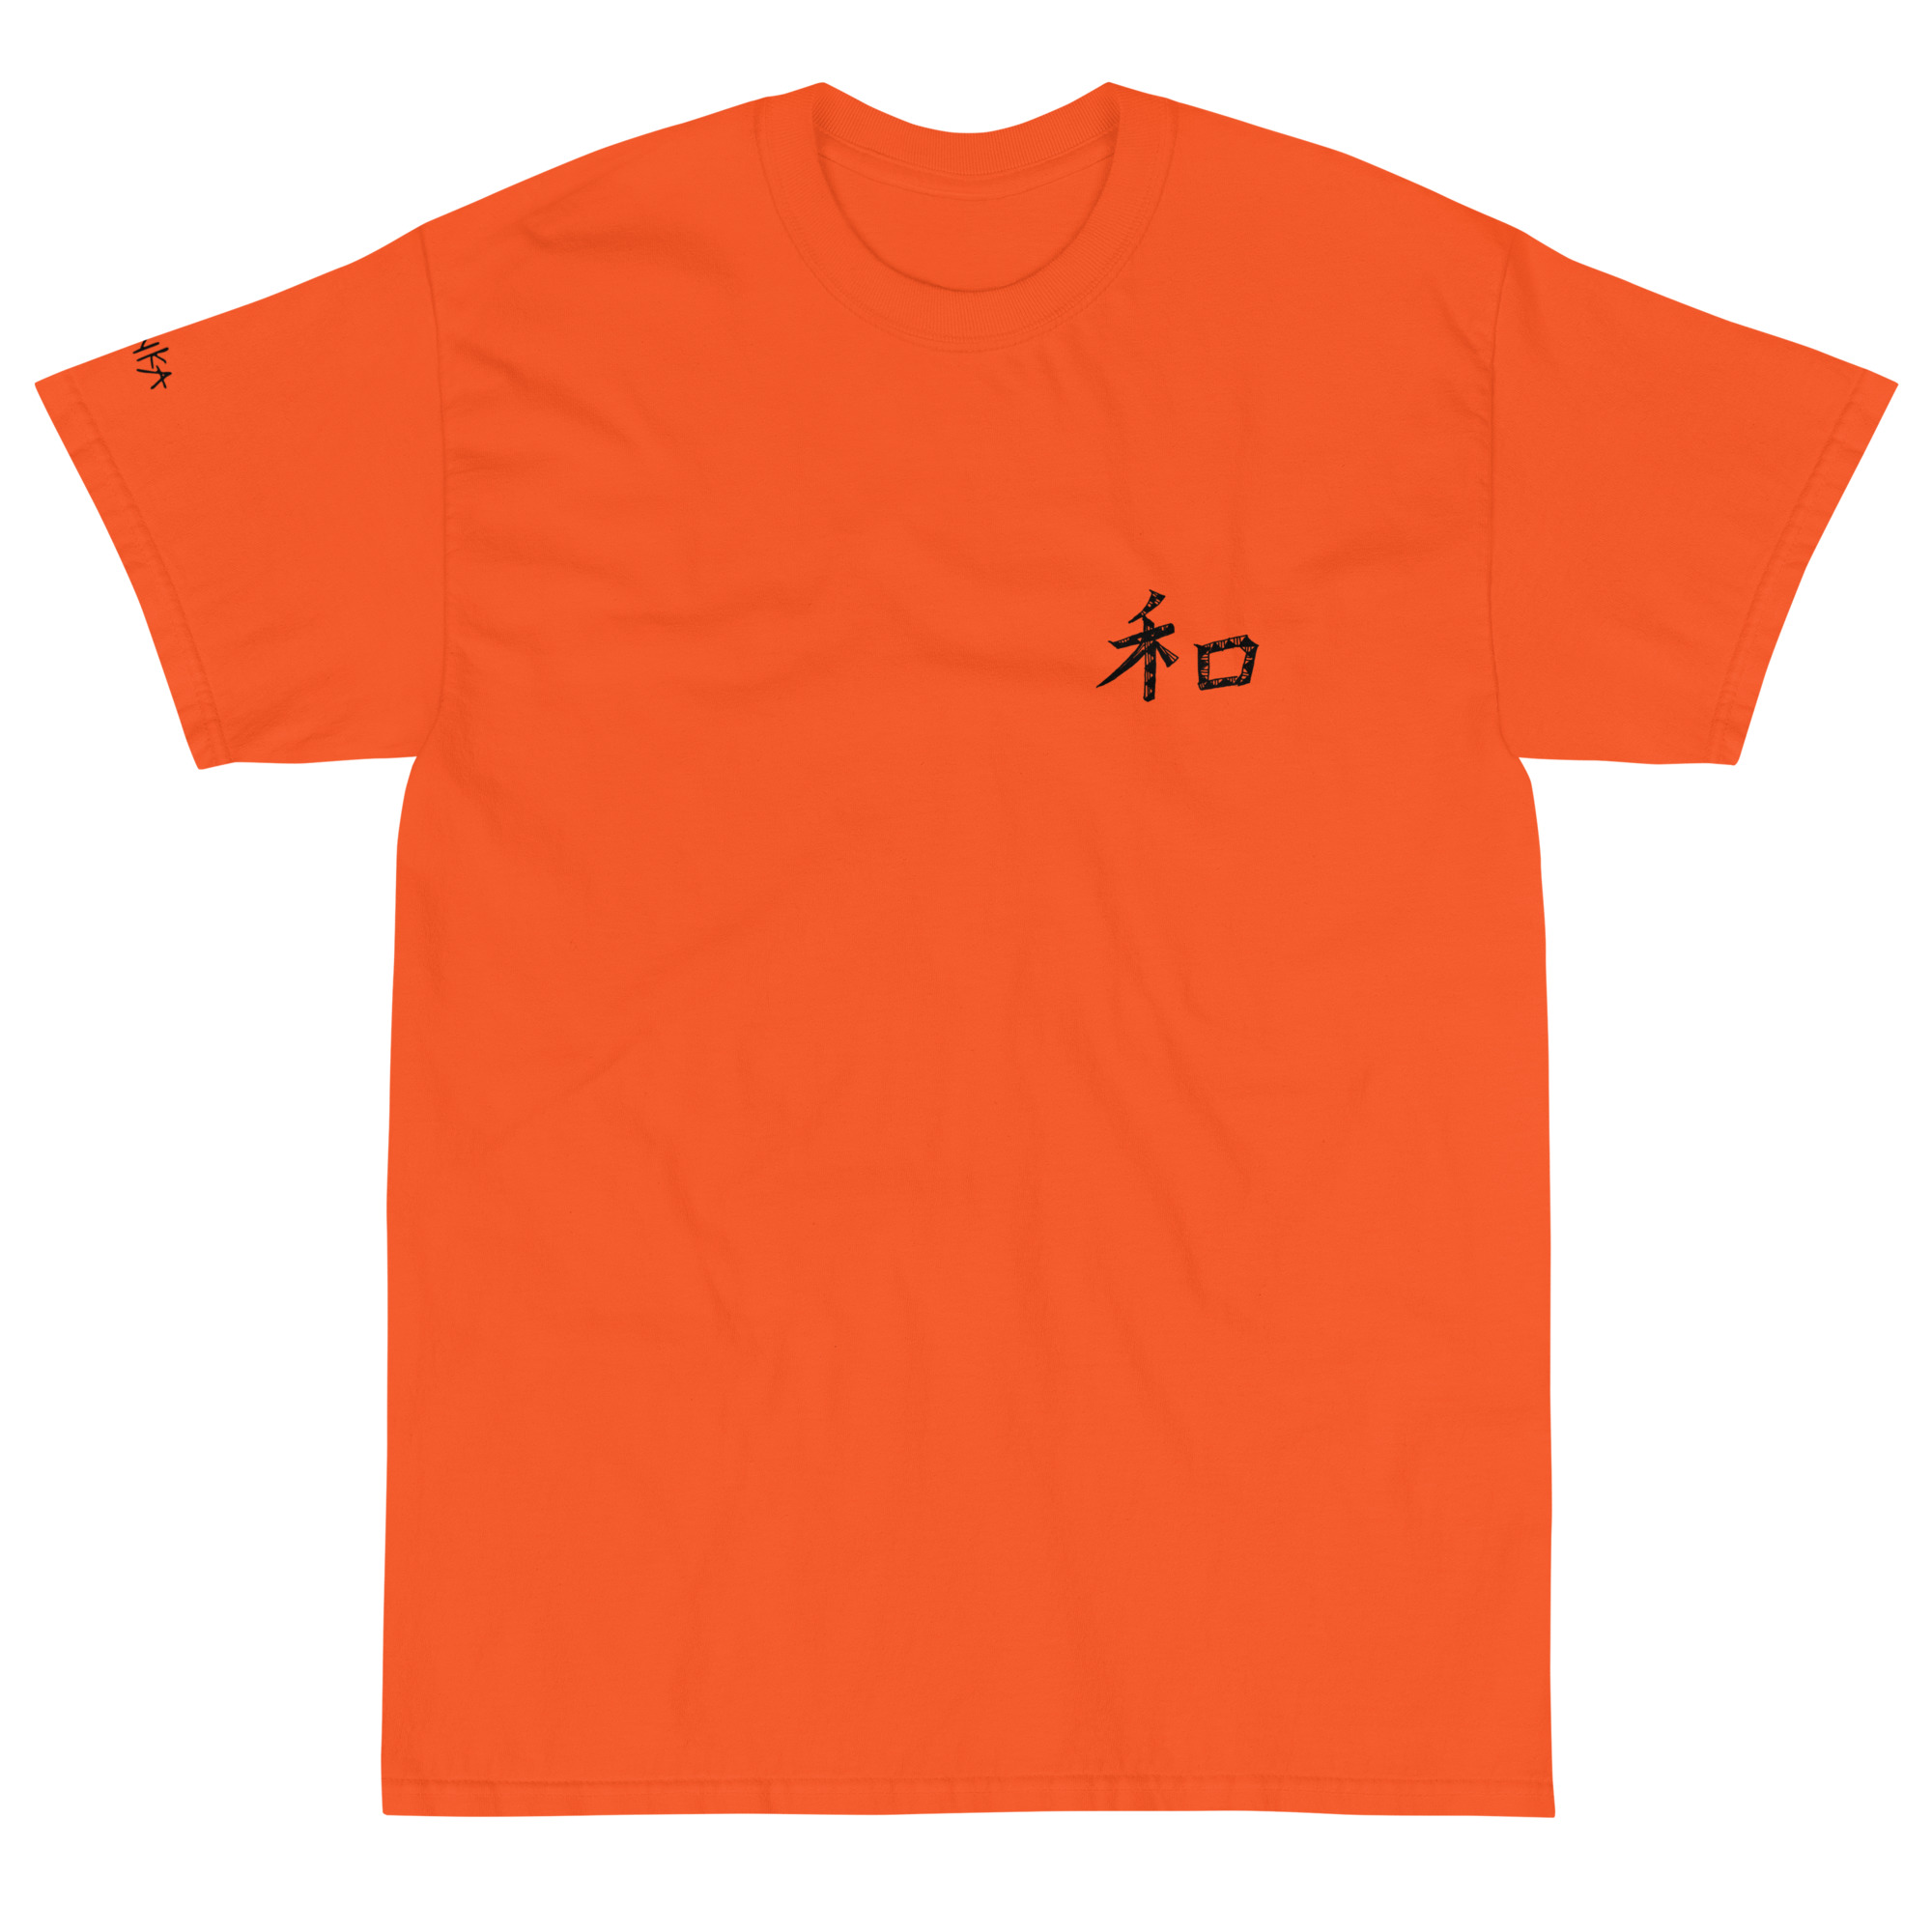 「和」の漢字をシンプルに配置したTシャツ「Gentle(温和)」を発売開始